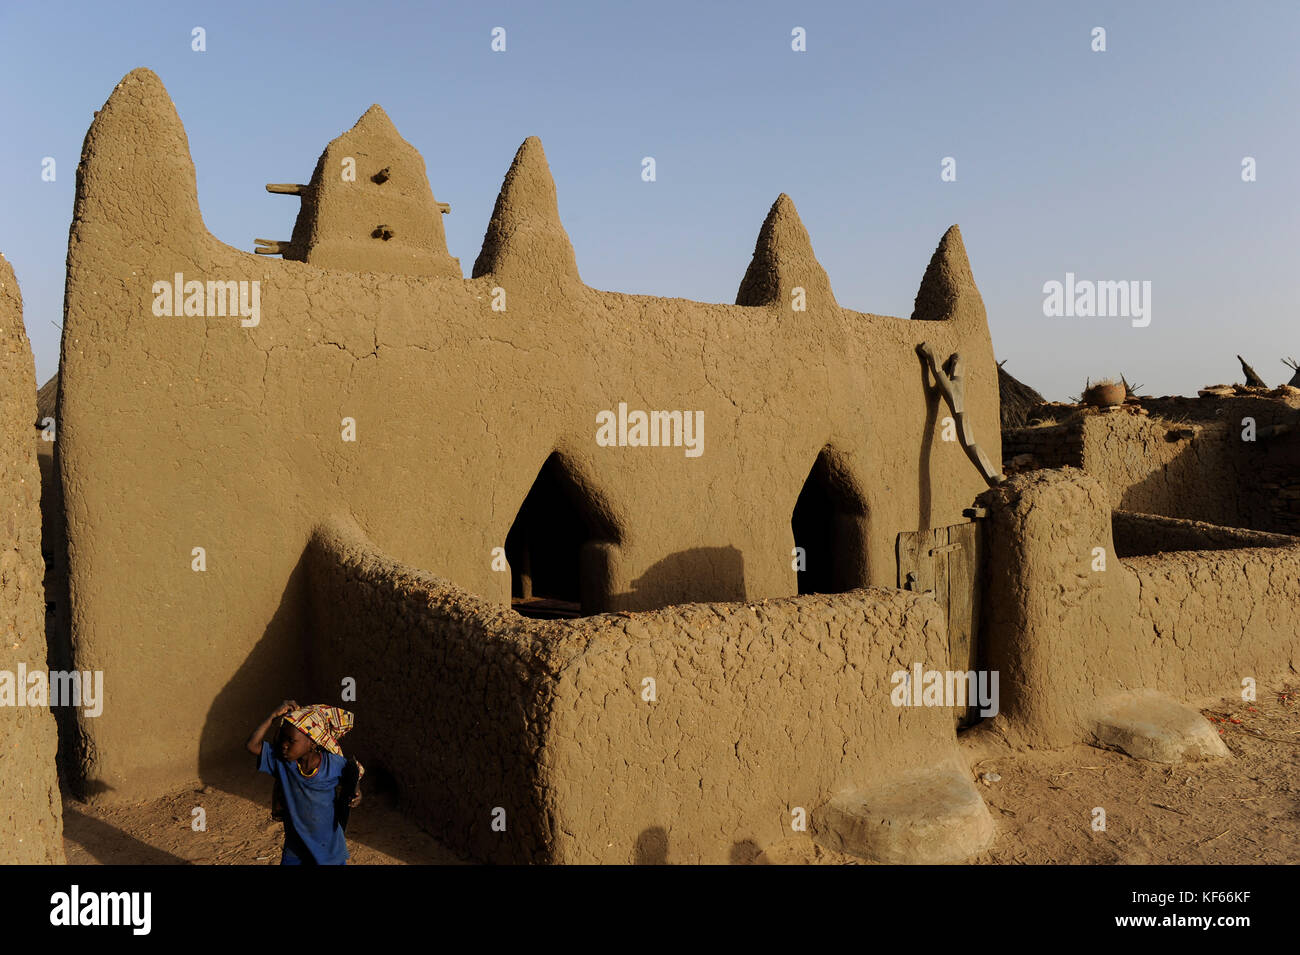 Land der Dogon in Mali, Dogon Village mit Ton Architektur an der Falaise die UNESCO Welterbe/MALI, etwa 20 km von Bandiagara südoestlich verlaeuft die rund 200 km lange Falaise, UNESCO-Welterbe, eine teilweise stark erodierte Sandsteinwand bis zu 300m Höhe, hier befinden sich viele Dogon Doerfer im Lehmbau Illustr. Stockfoto